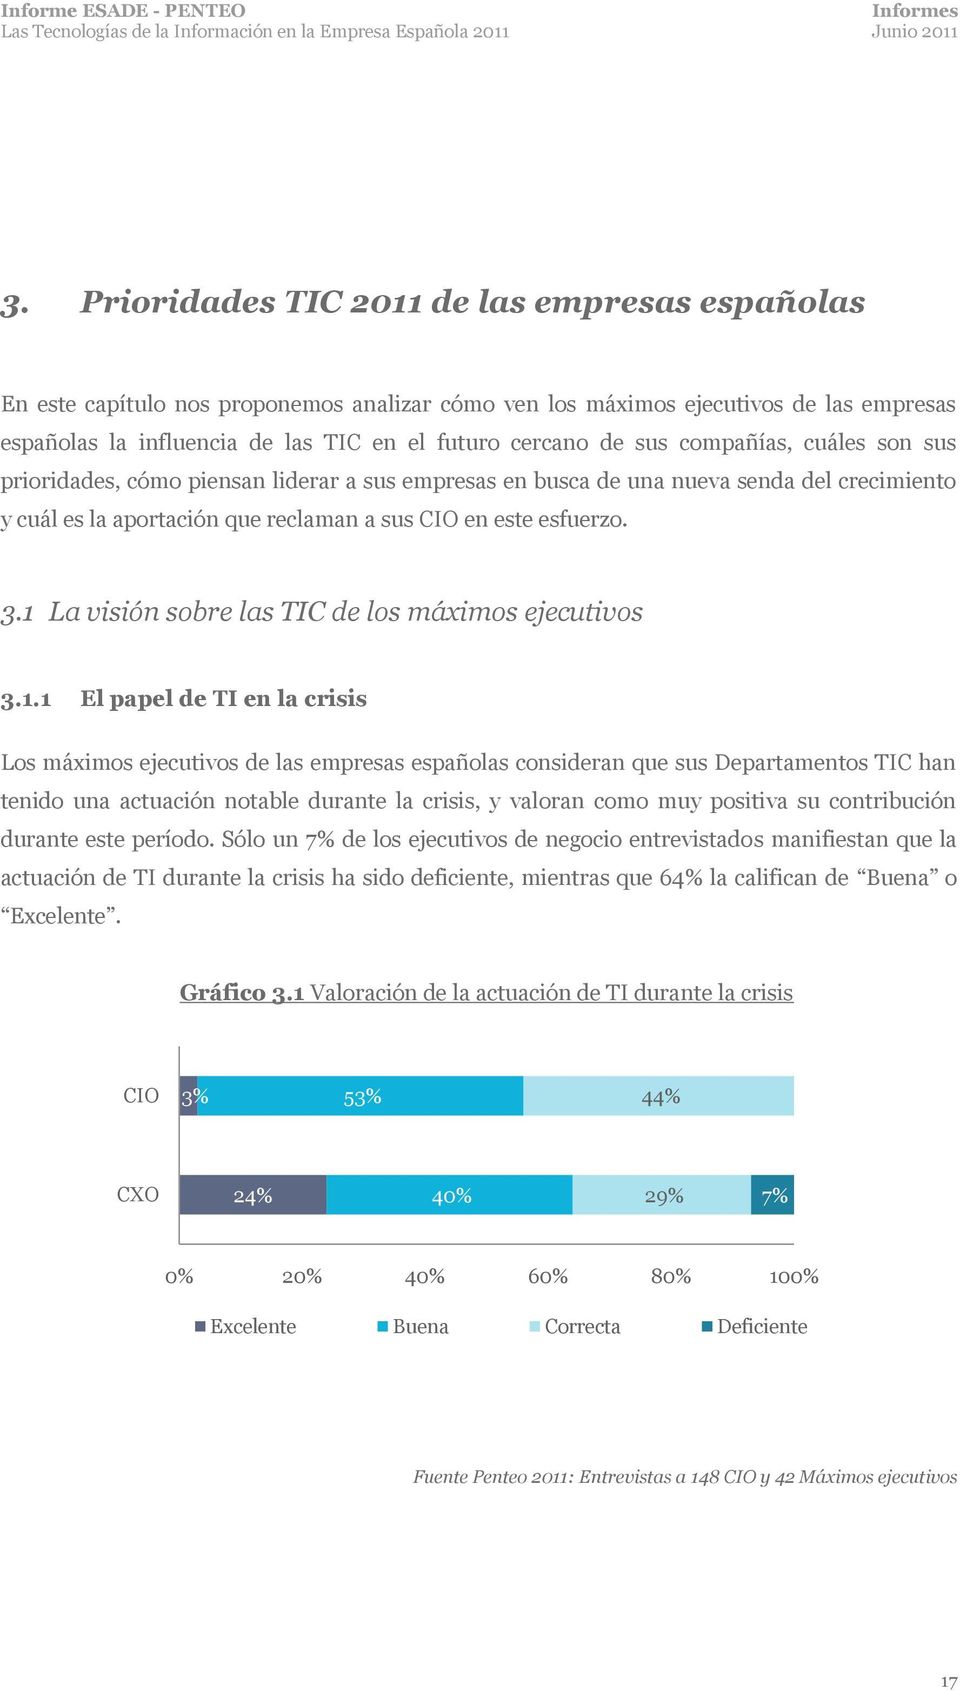 1 La visión sobre las TIC de los máximos ejecutivos 3.1.1 El papel de TI en la crisis Los máximos ejecutivos de las empresas españolas consideran que sus Departamentos TIC han tenido una actuación